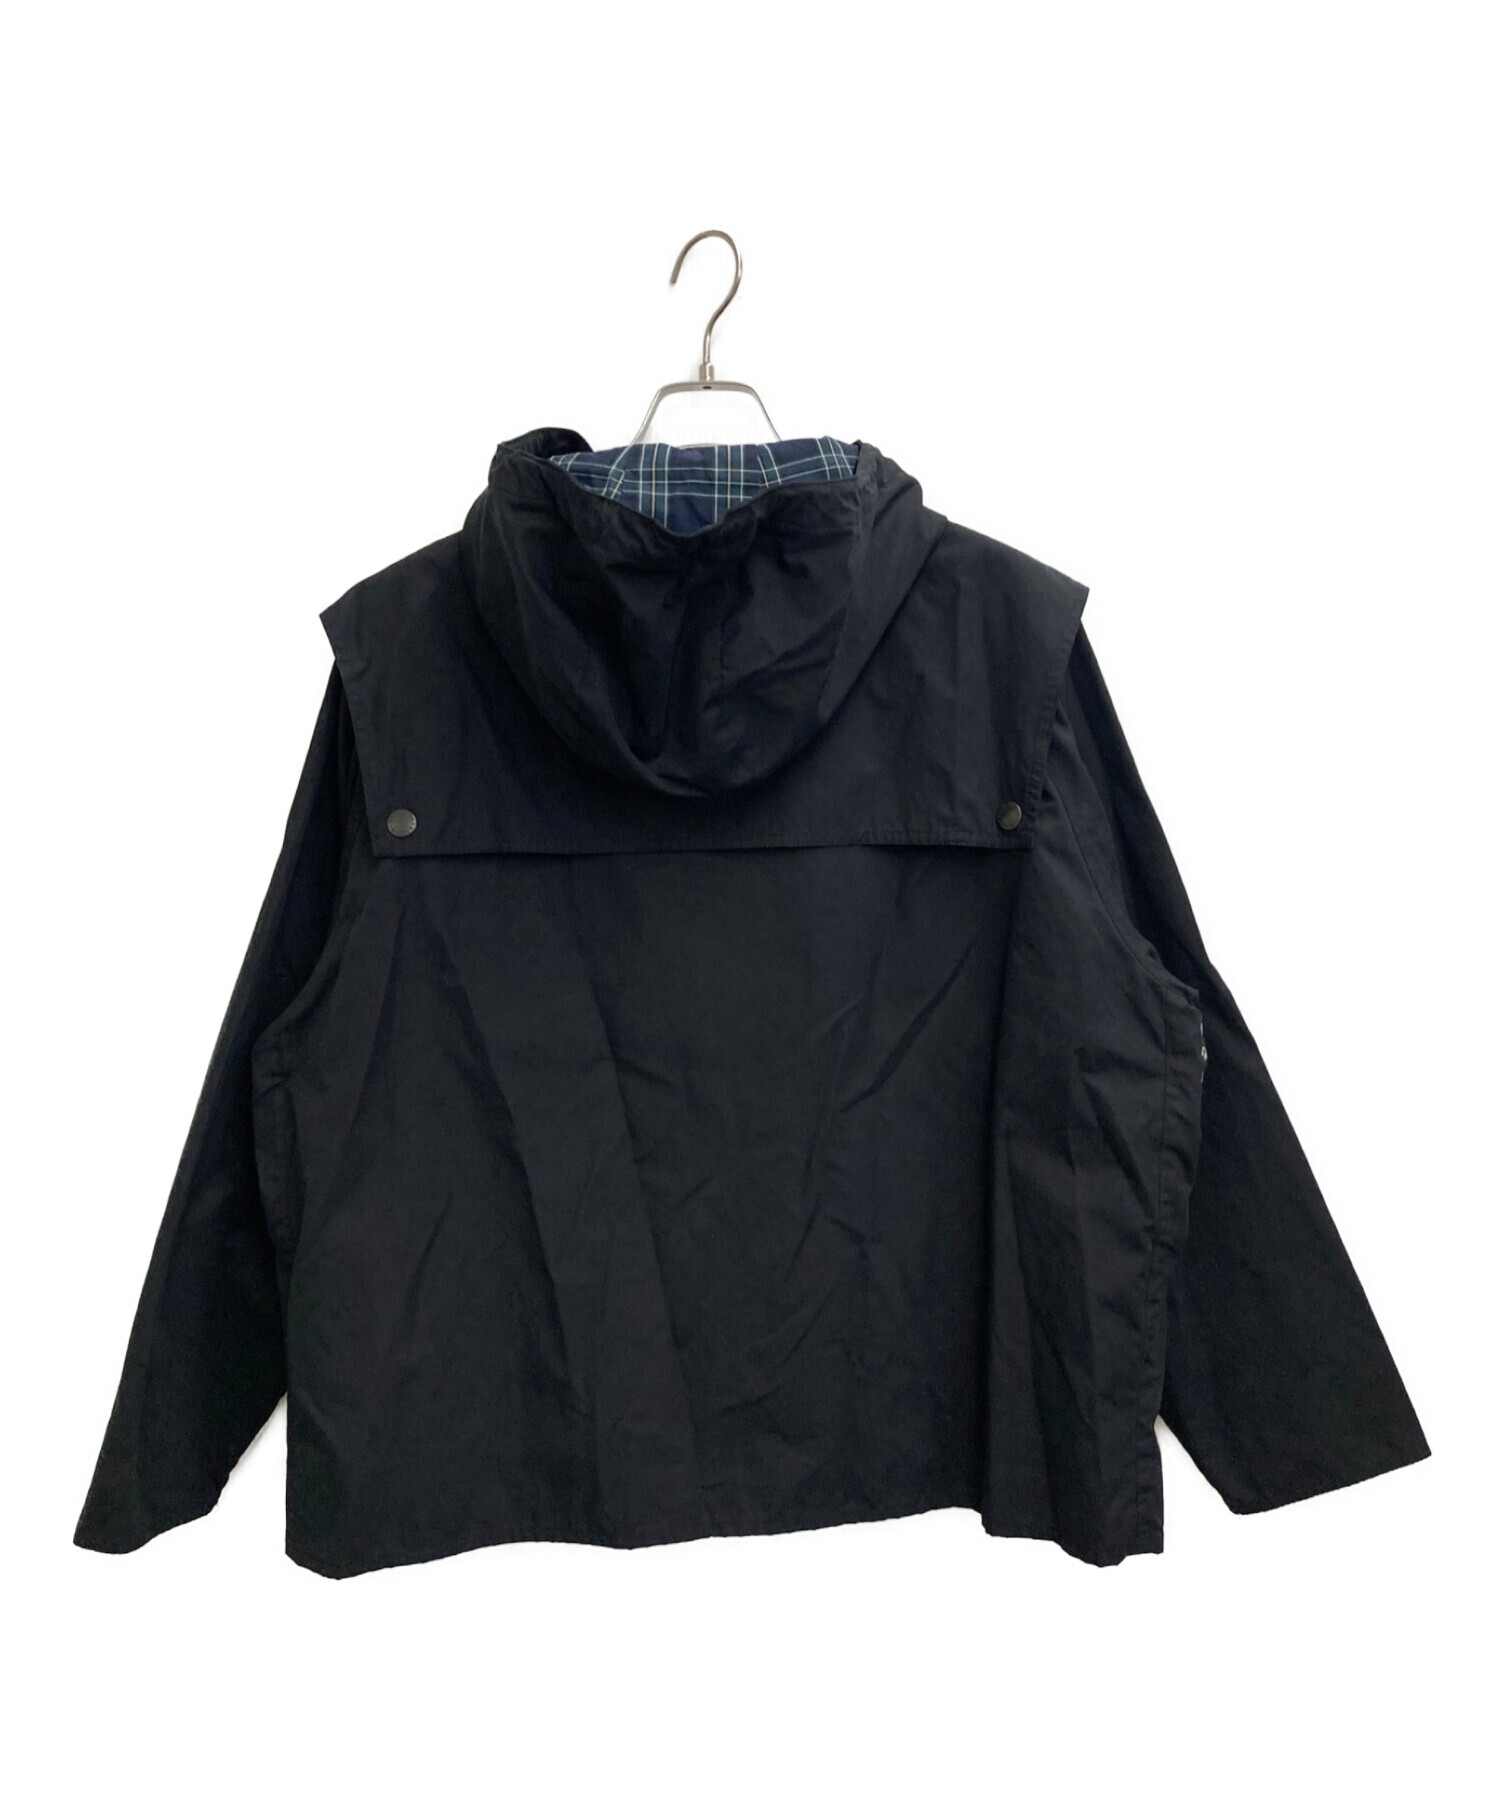 Barbour (バブアー) TRANSPORTジャケット ブラック サイズ:38